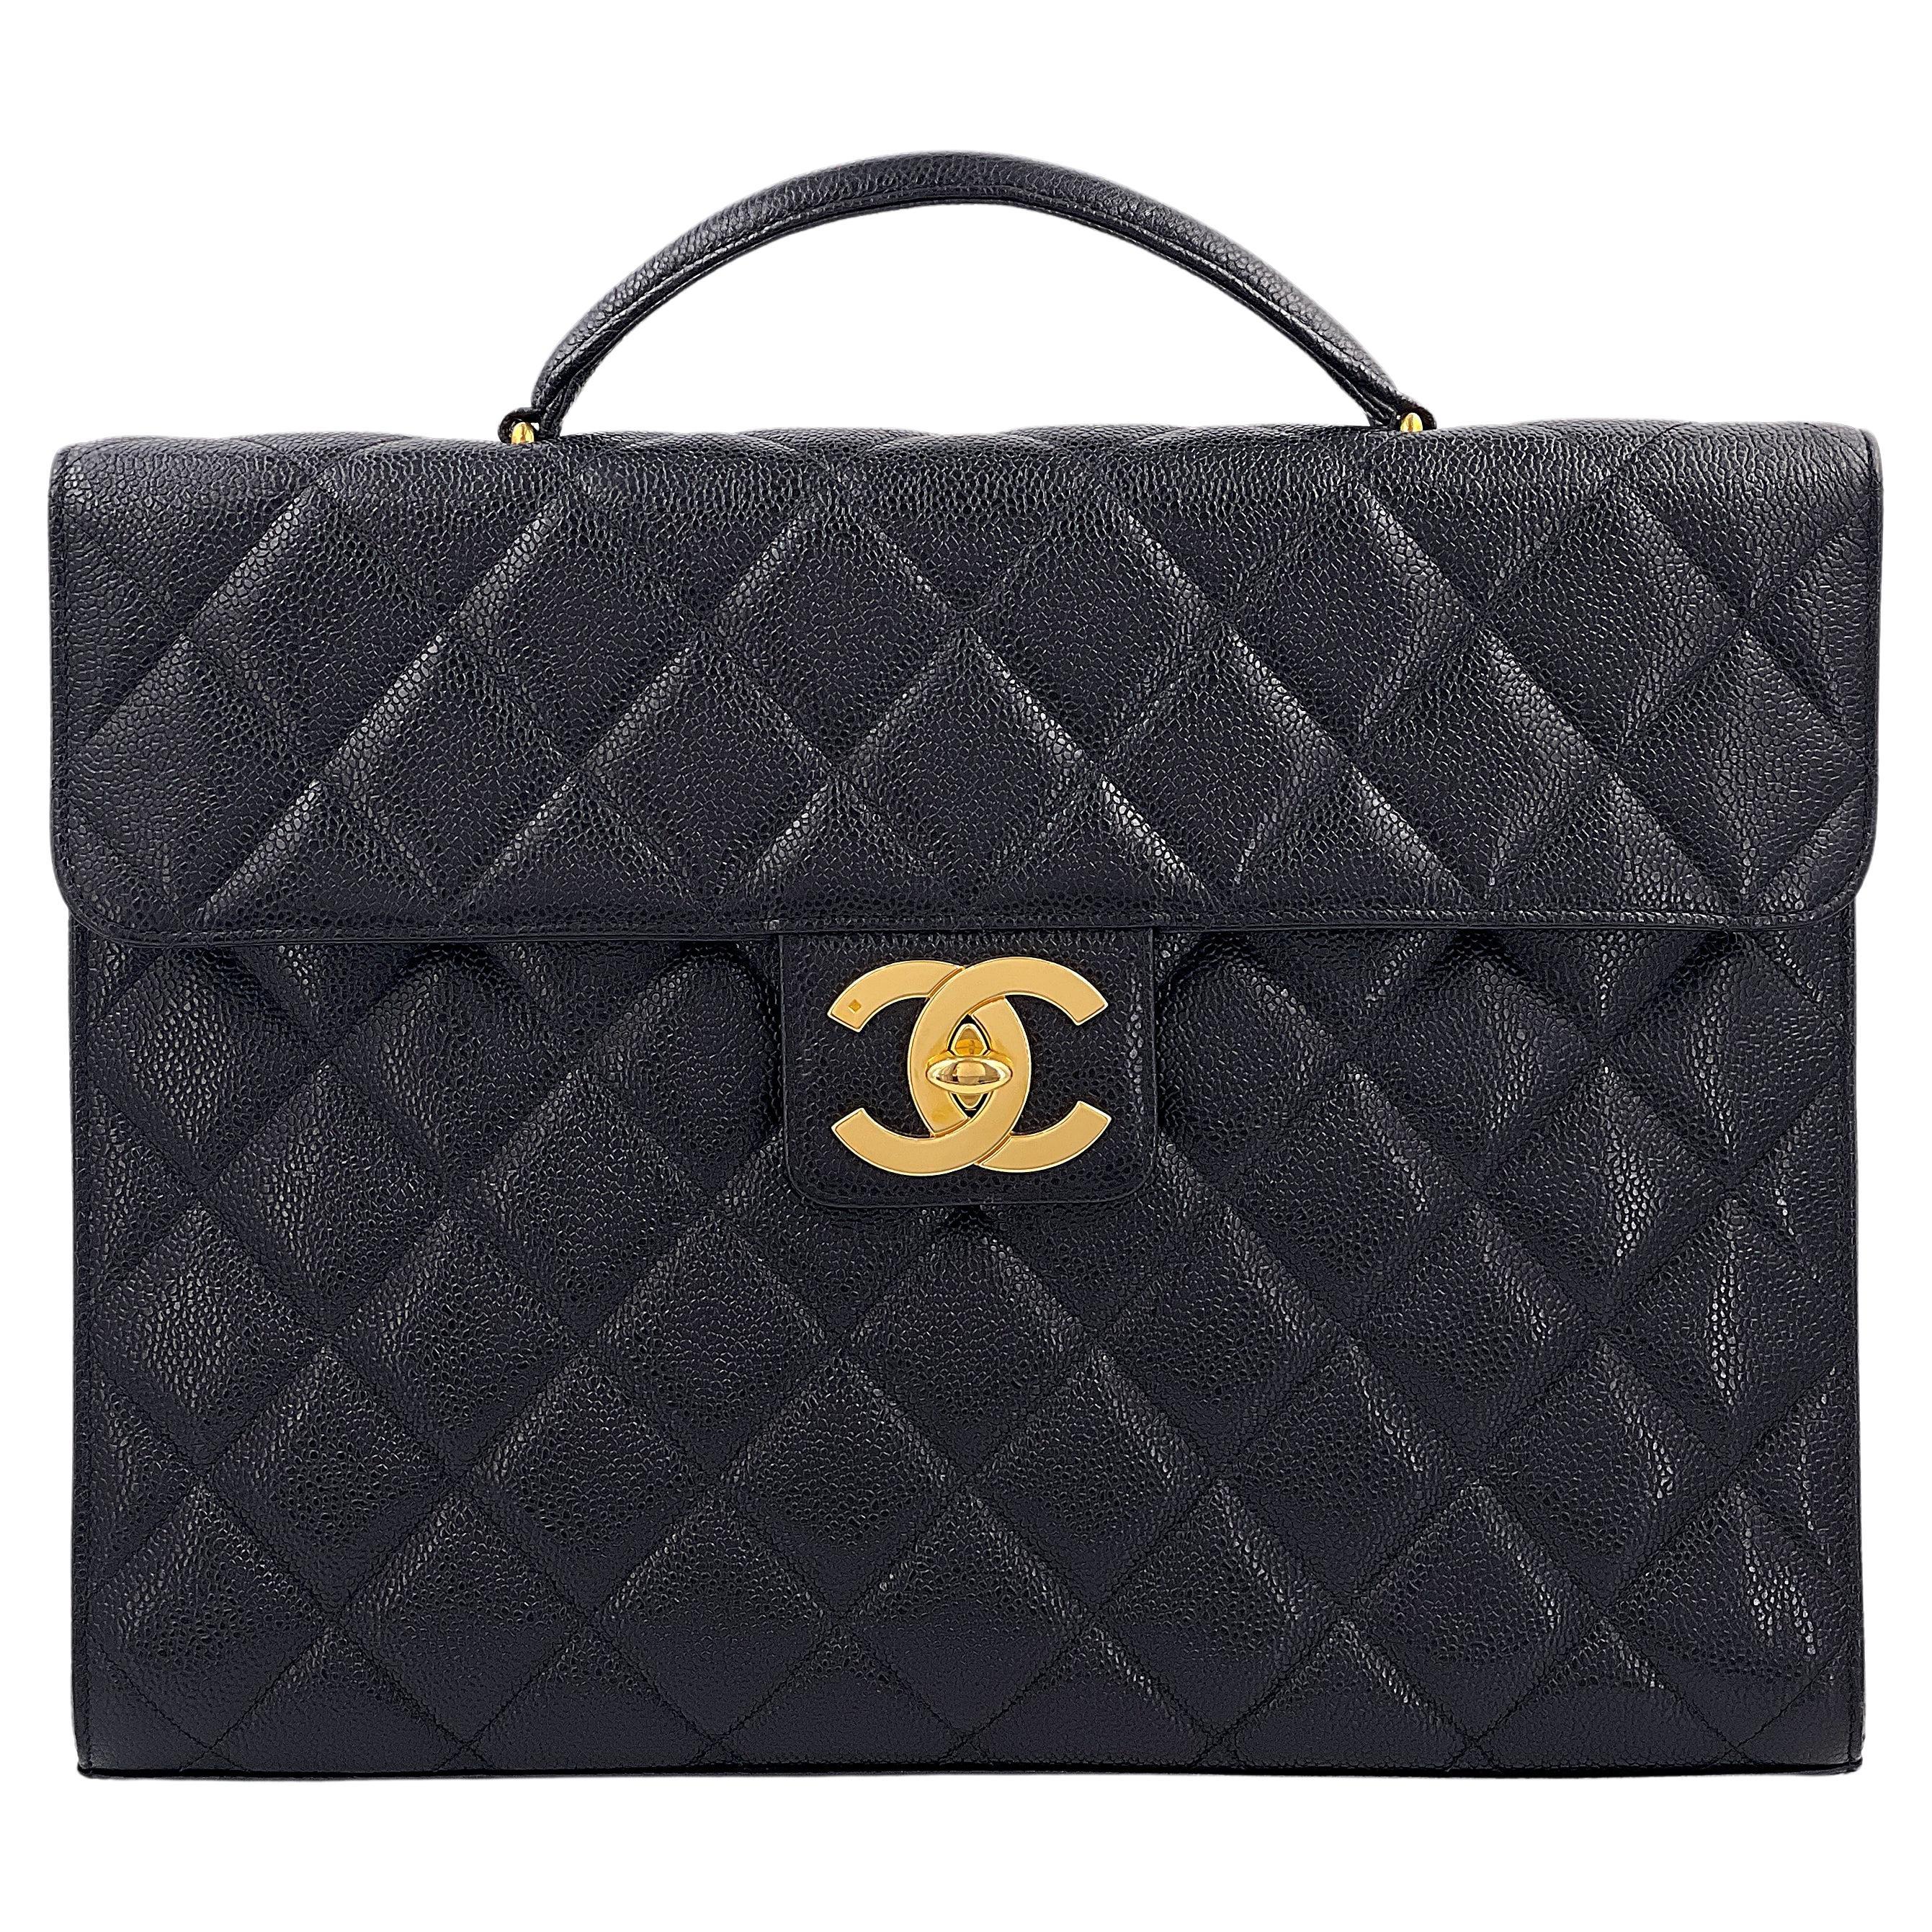 Chanel 1995 Vintage Black Caviar Briefcase Tote Bag 24k GHW 67916